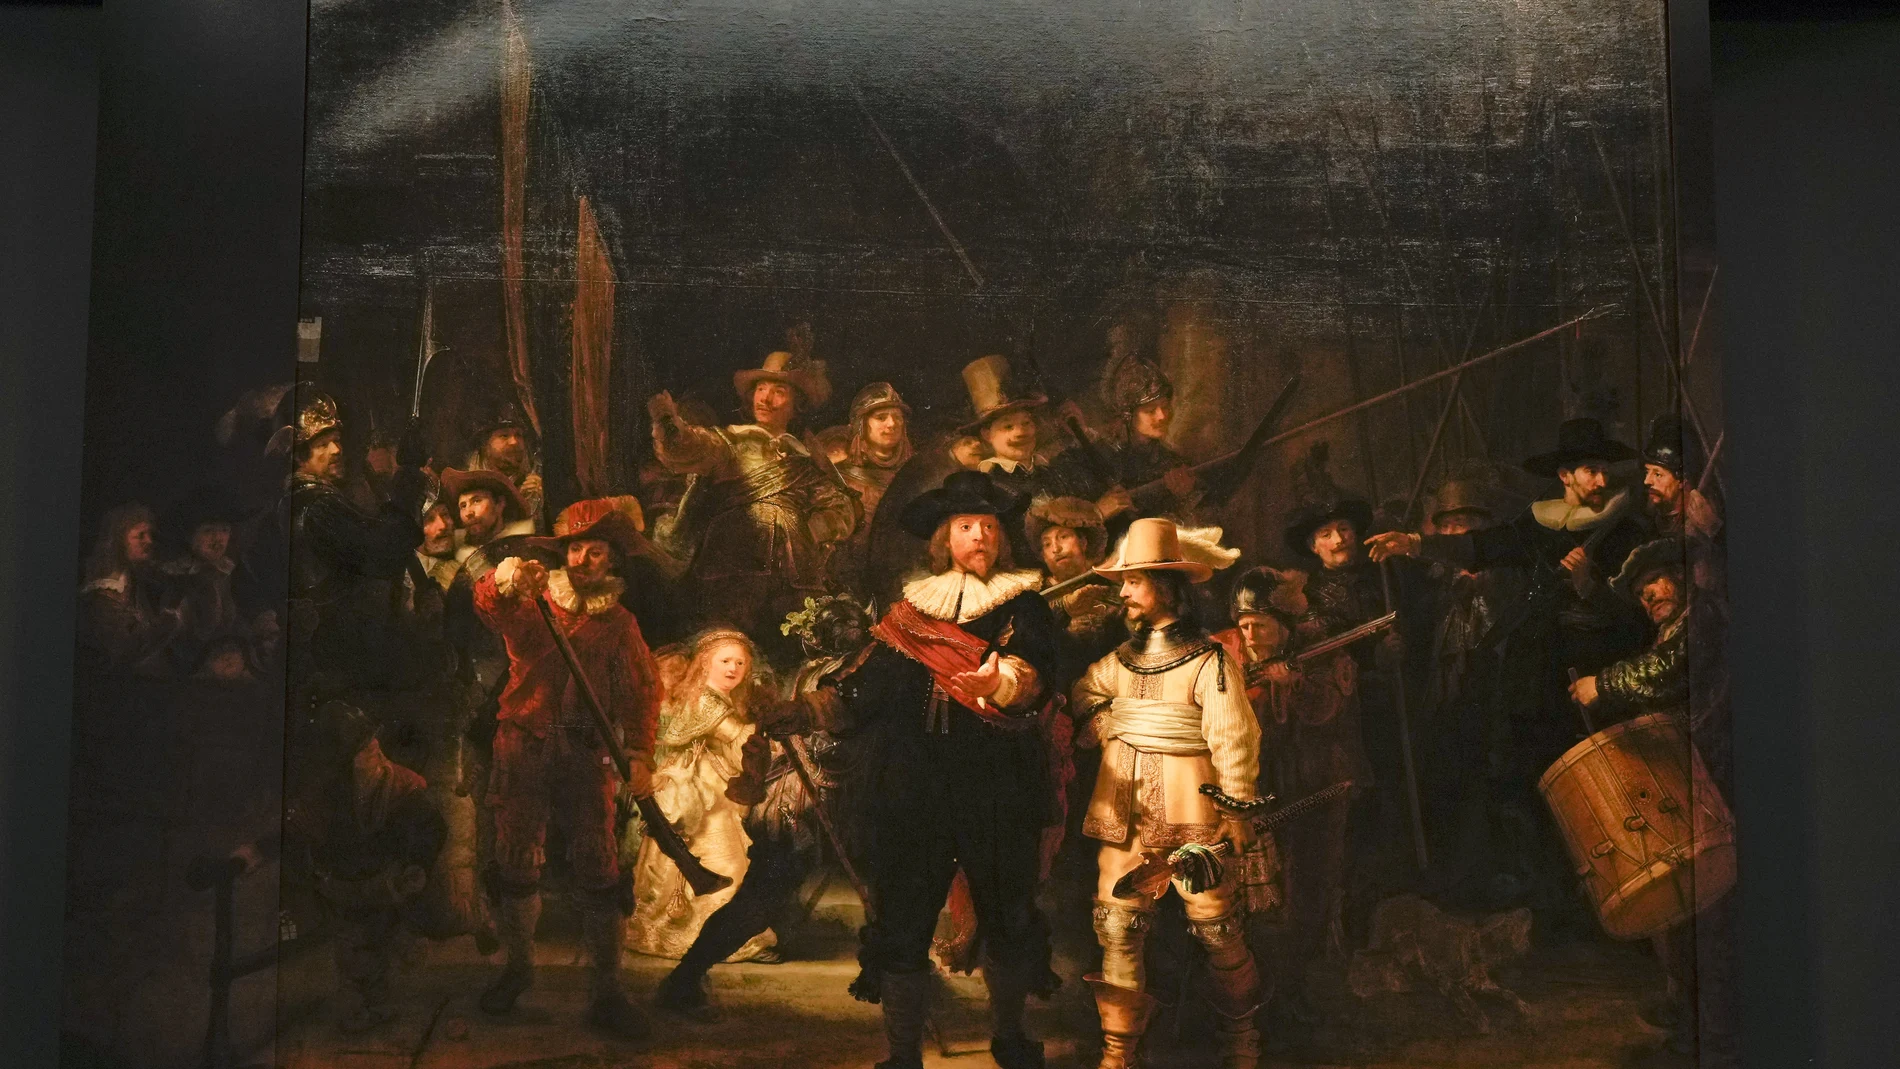 "La ronda de noche" es la obra más grande y famosa de Rembrandt